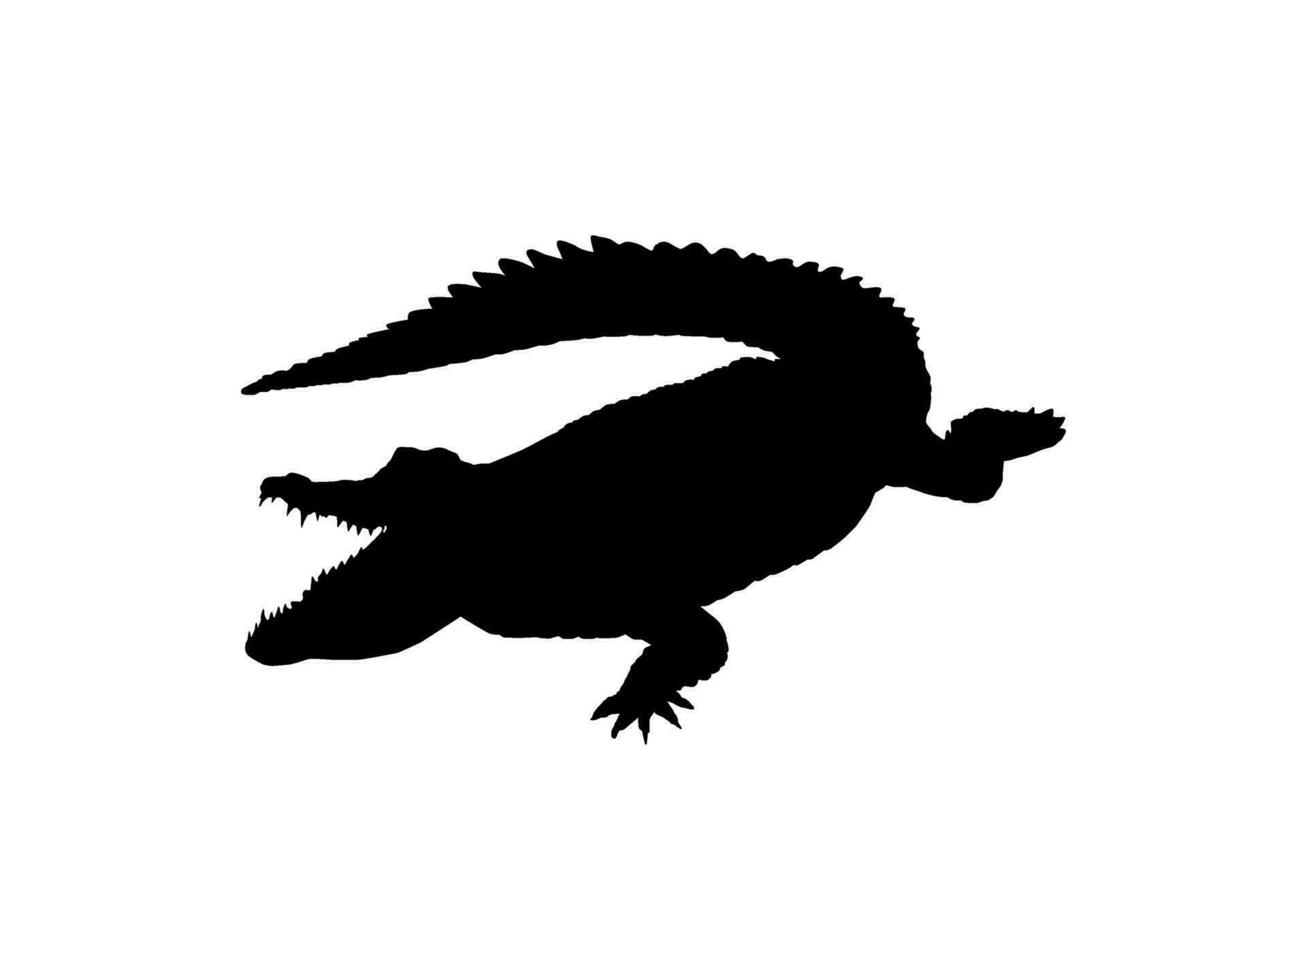 cocodrilo o caimán silueta para Arte ilustración, pictograma, logo tipo, sitio web o gráfico diseño elemento. vector ilustración